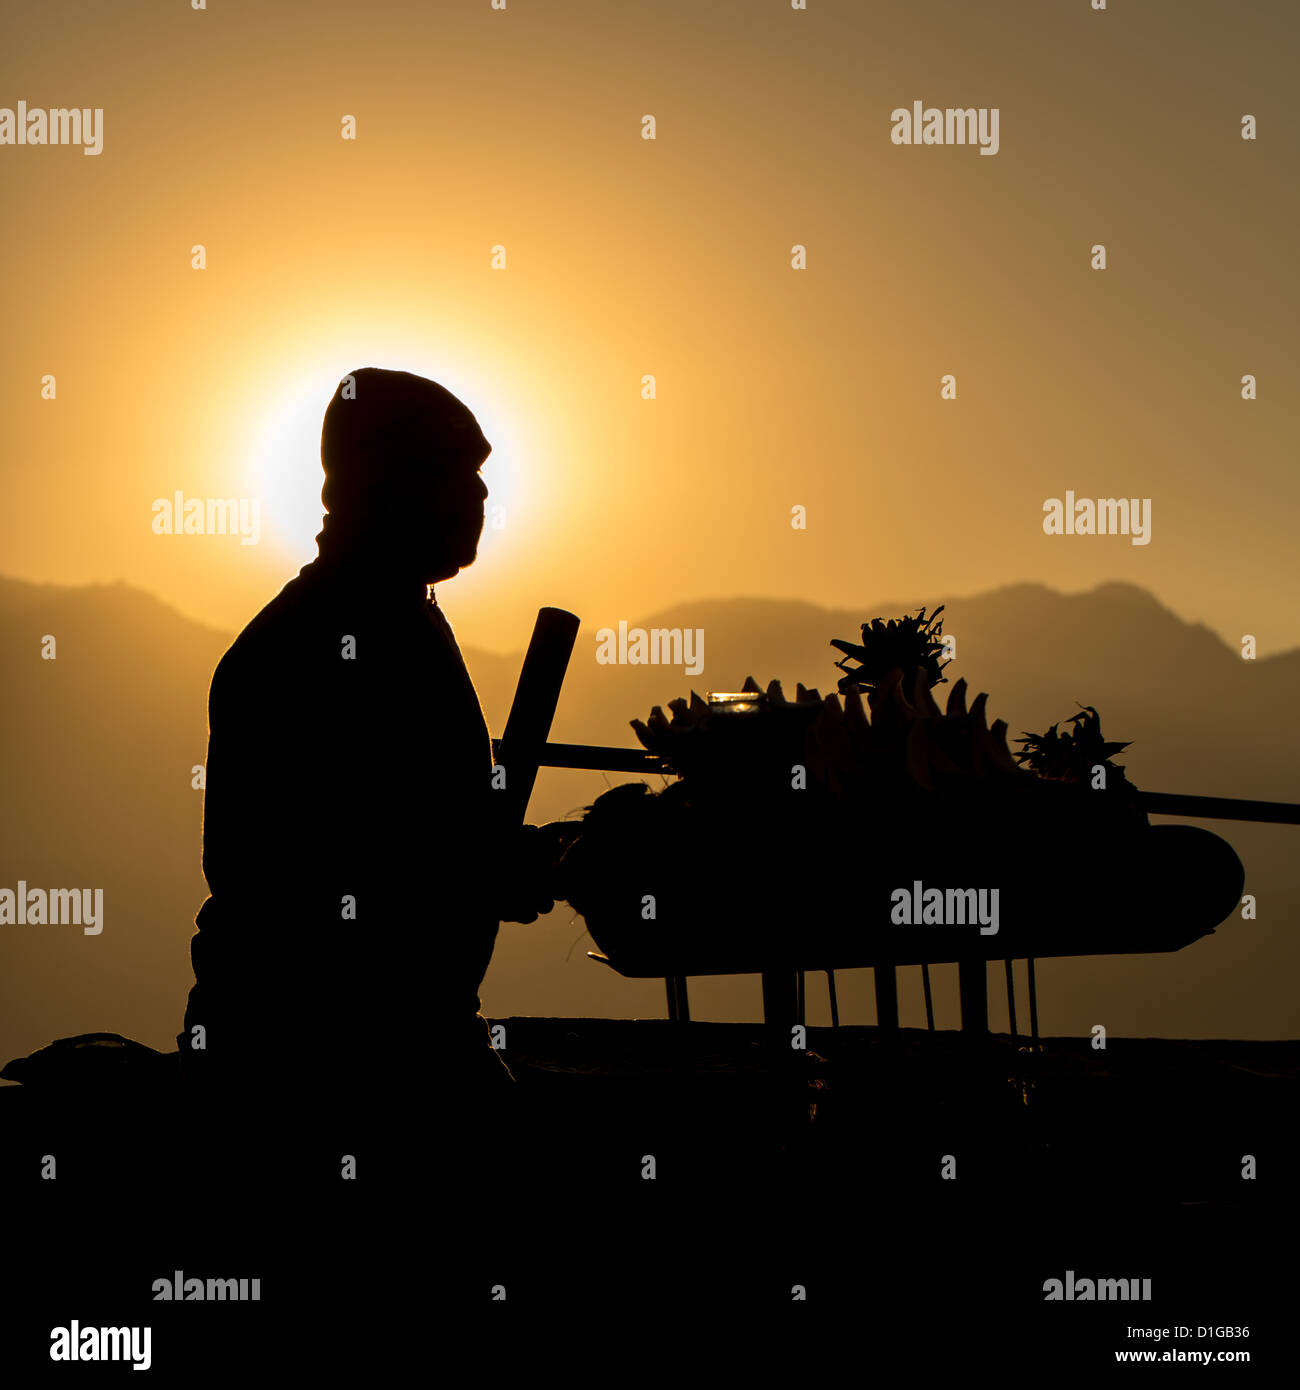 Silhouette of a man selling fruits, Kathmandu, Nepal Stock Photo